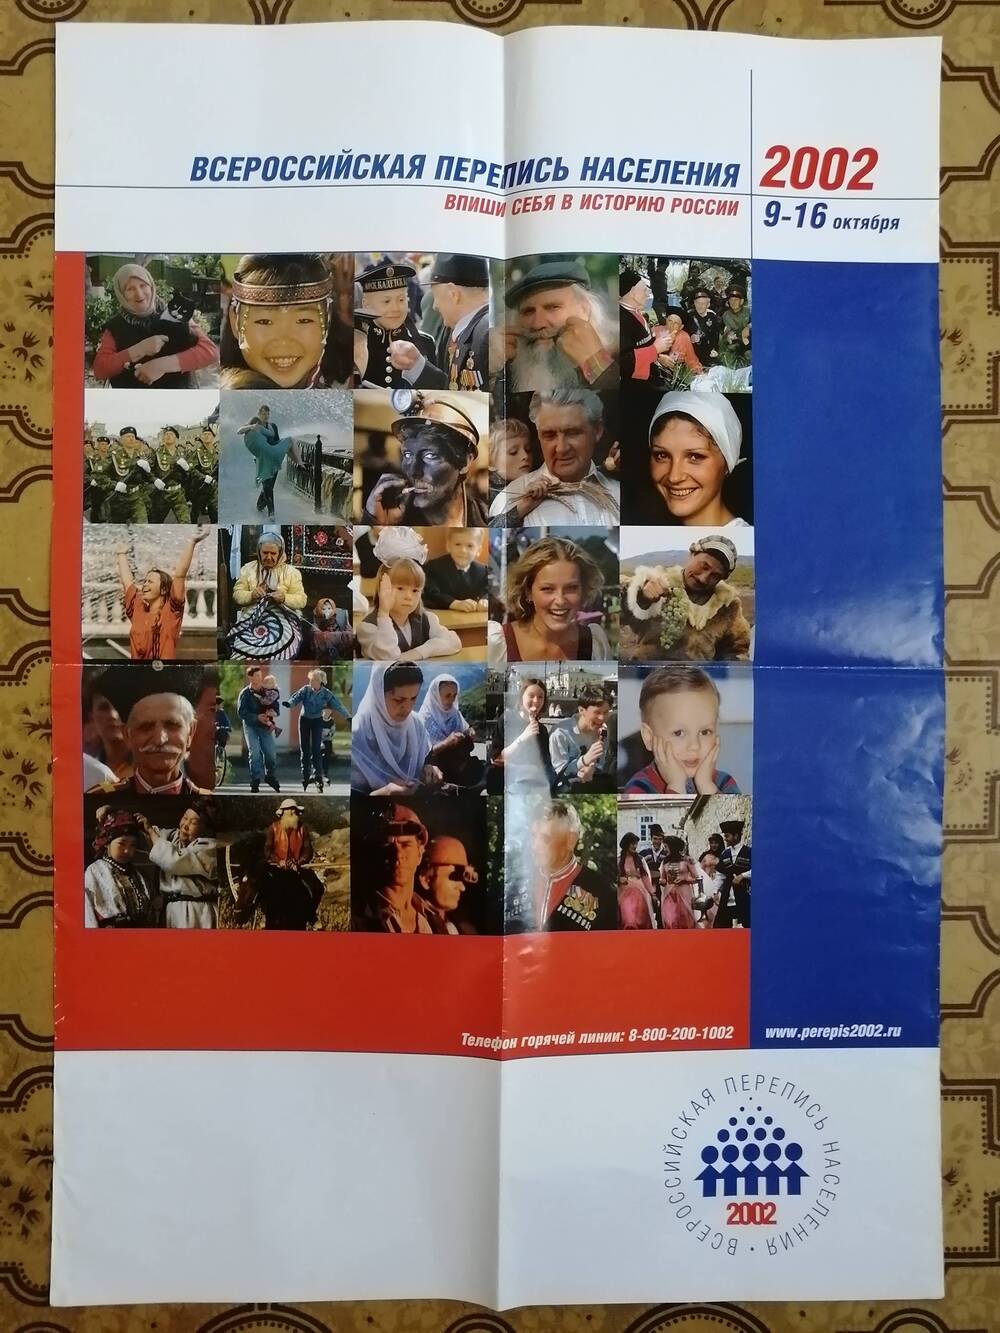 Плакат. Всероссийская перепись населения 2002.